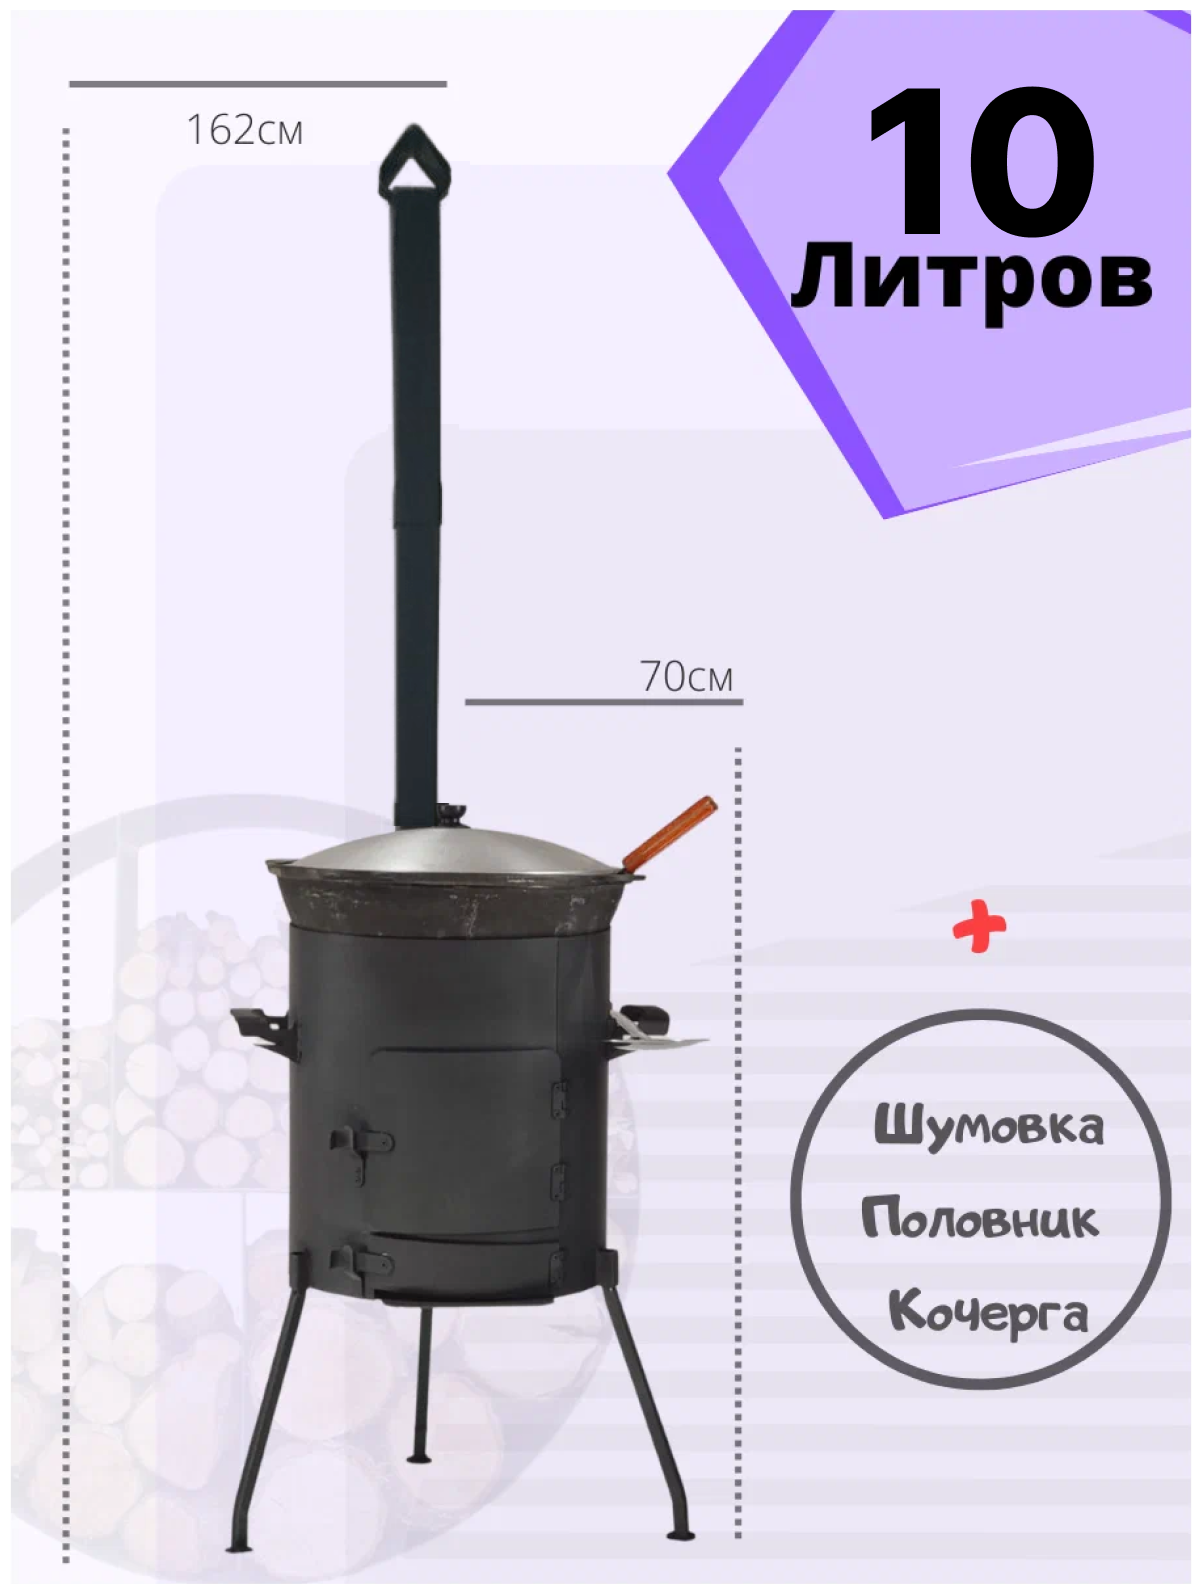 Комплект казан 10 литров + печь с зольником с дверцей и трубой + шумовка + половник Svargan